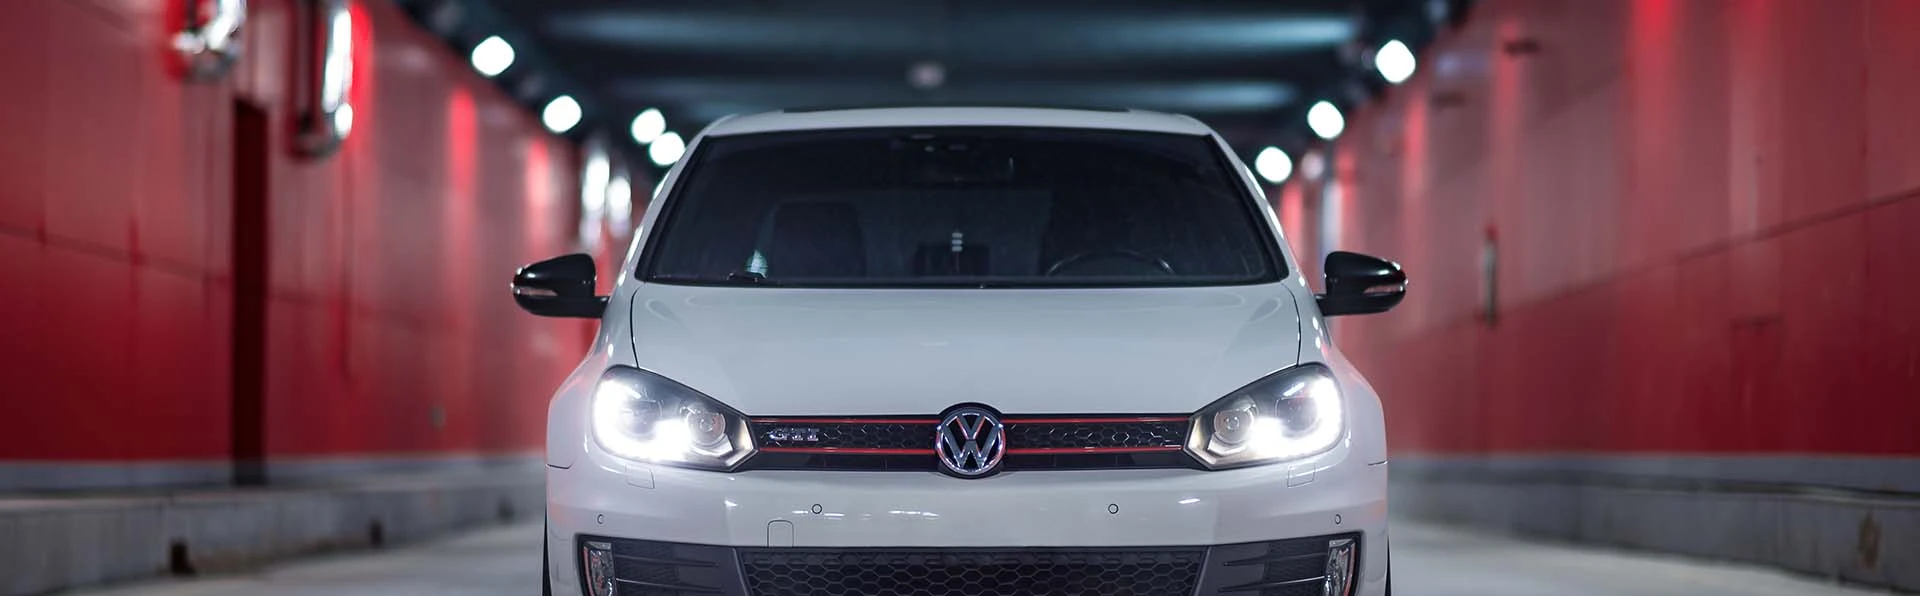 Volkswagen Car Leasing Contracts